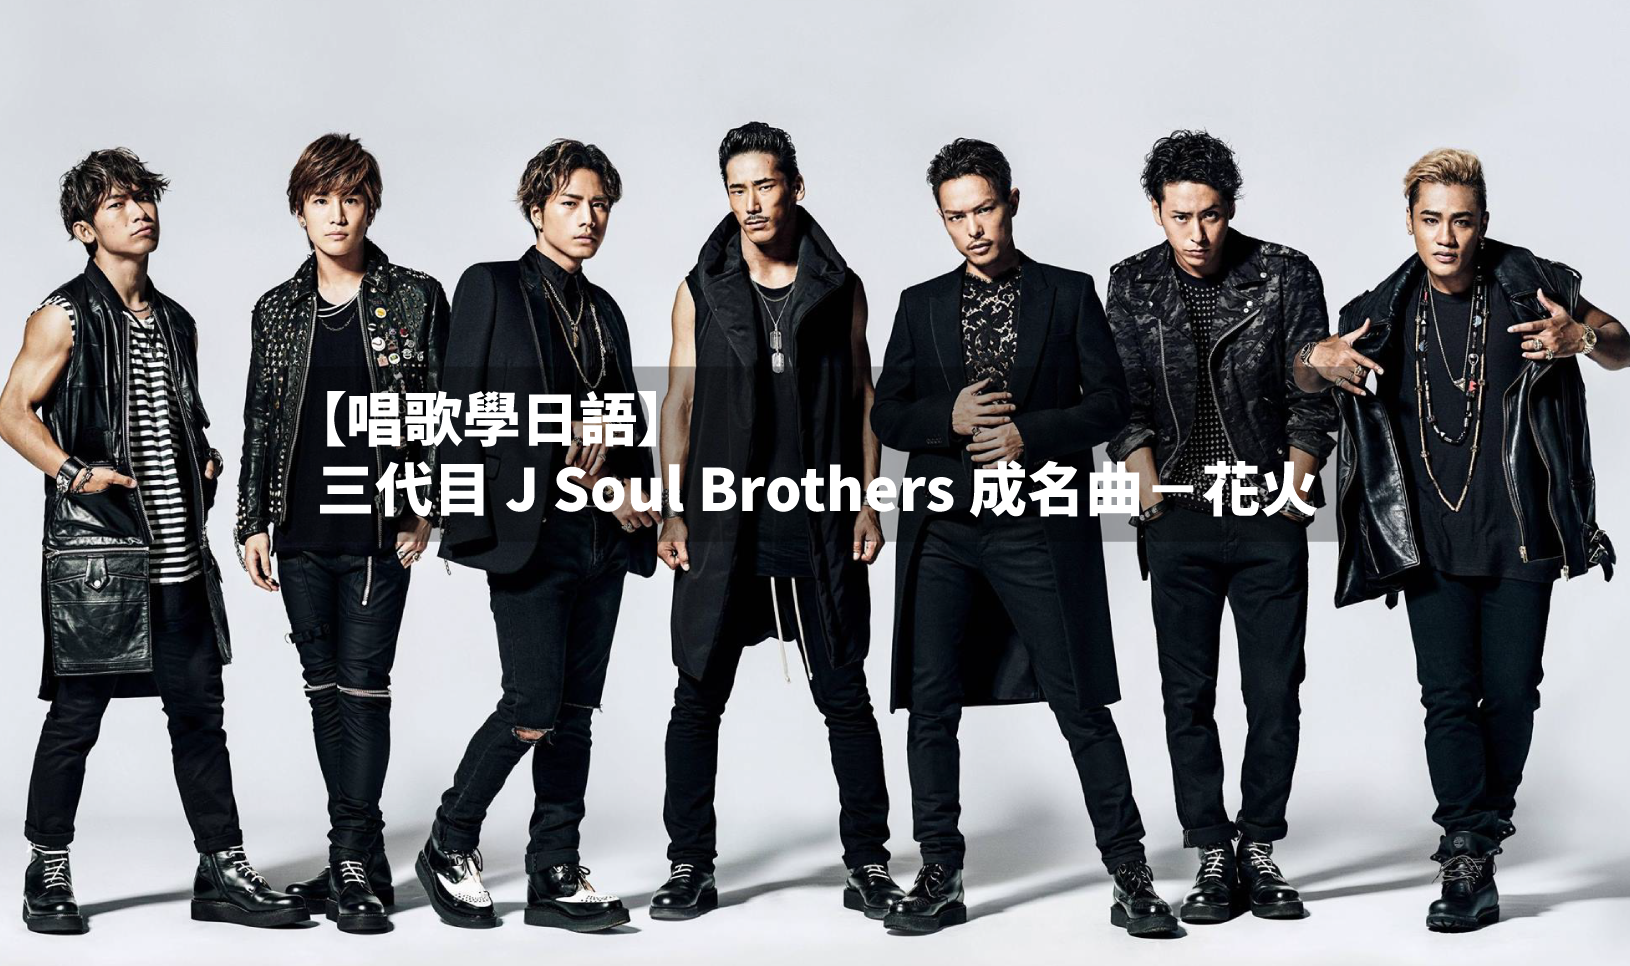 唱歌學日語 三代目j Soul Brothers成名曲 花火 外語學習文章部落格 At Blog